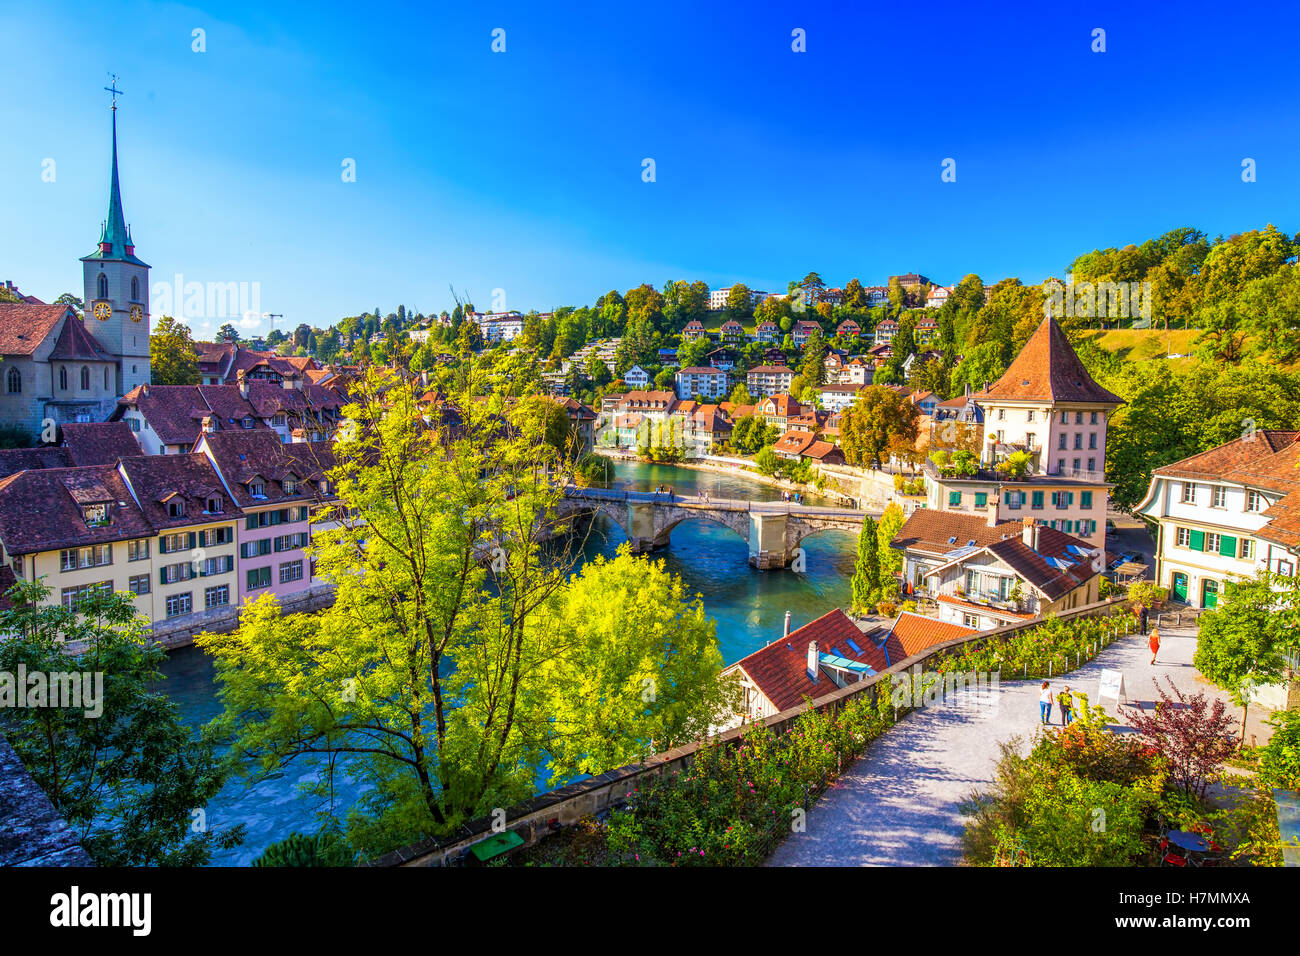 Blick auf die Berner Altstadt mit Fluss Aare. Bern ist die Hauptstadt der Schweiz und viertgrößte Stadt der Schweiz. Stockfoto